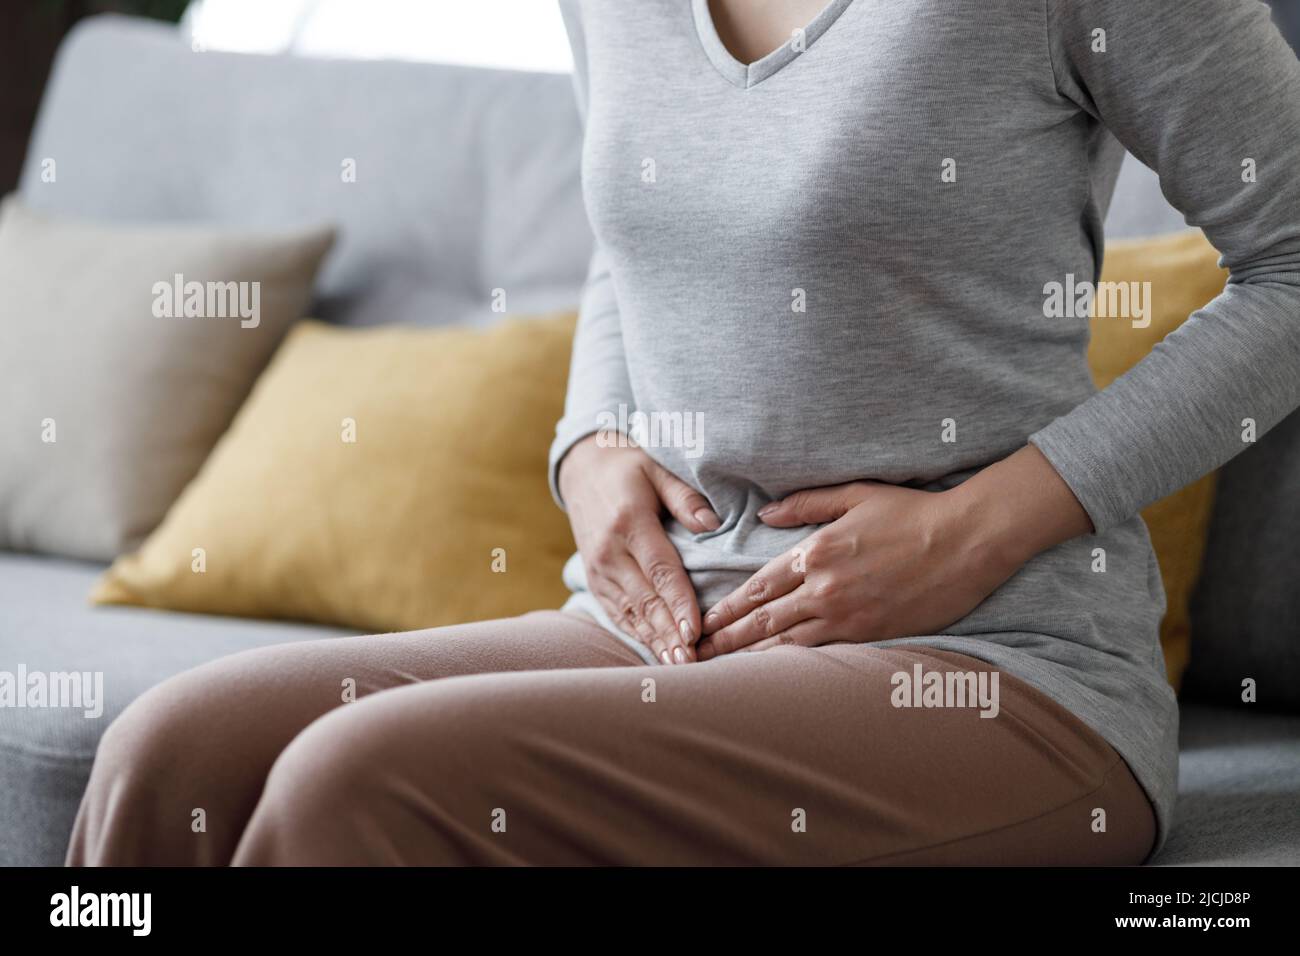 Kranke junge Frau, die an Menstruationsschmerzen leidet. Frau mit den Händen, die den Bauch quetschen, mit schmerzhaften Bauchschmerzen oder Periodenkrämpfen, die auf dem Sofa sitzen Stockfoto